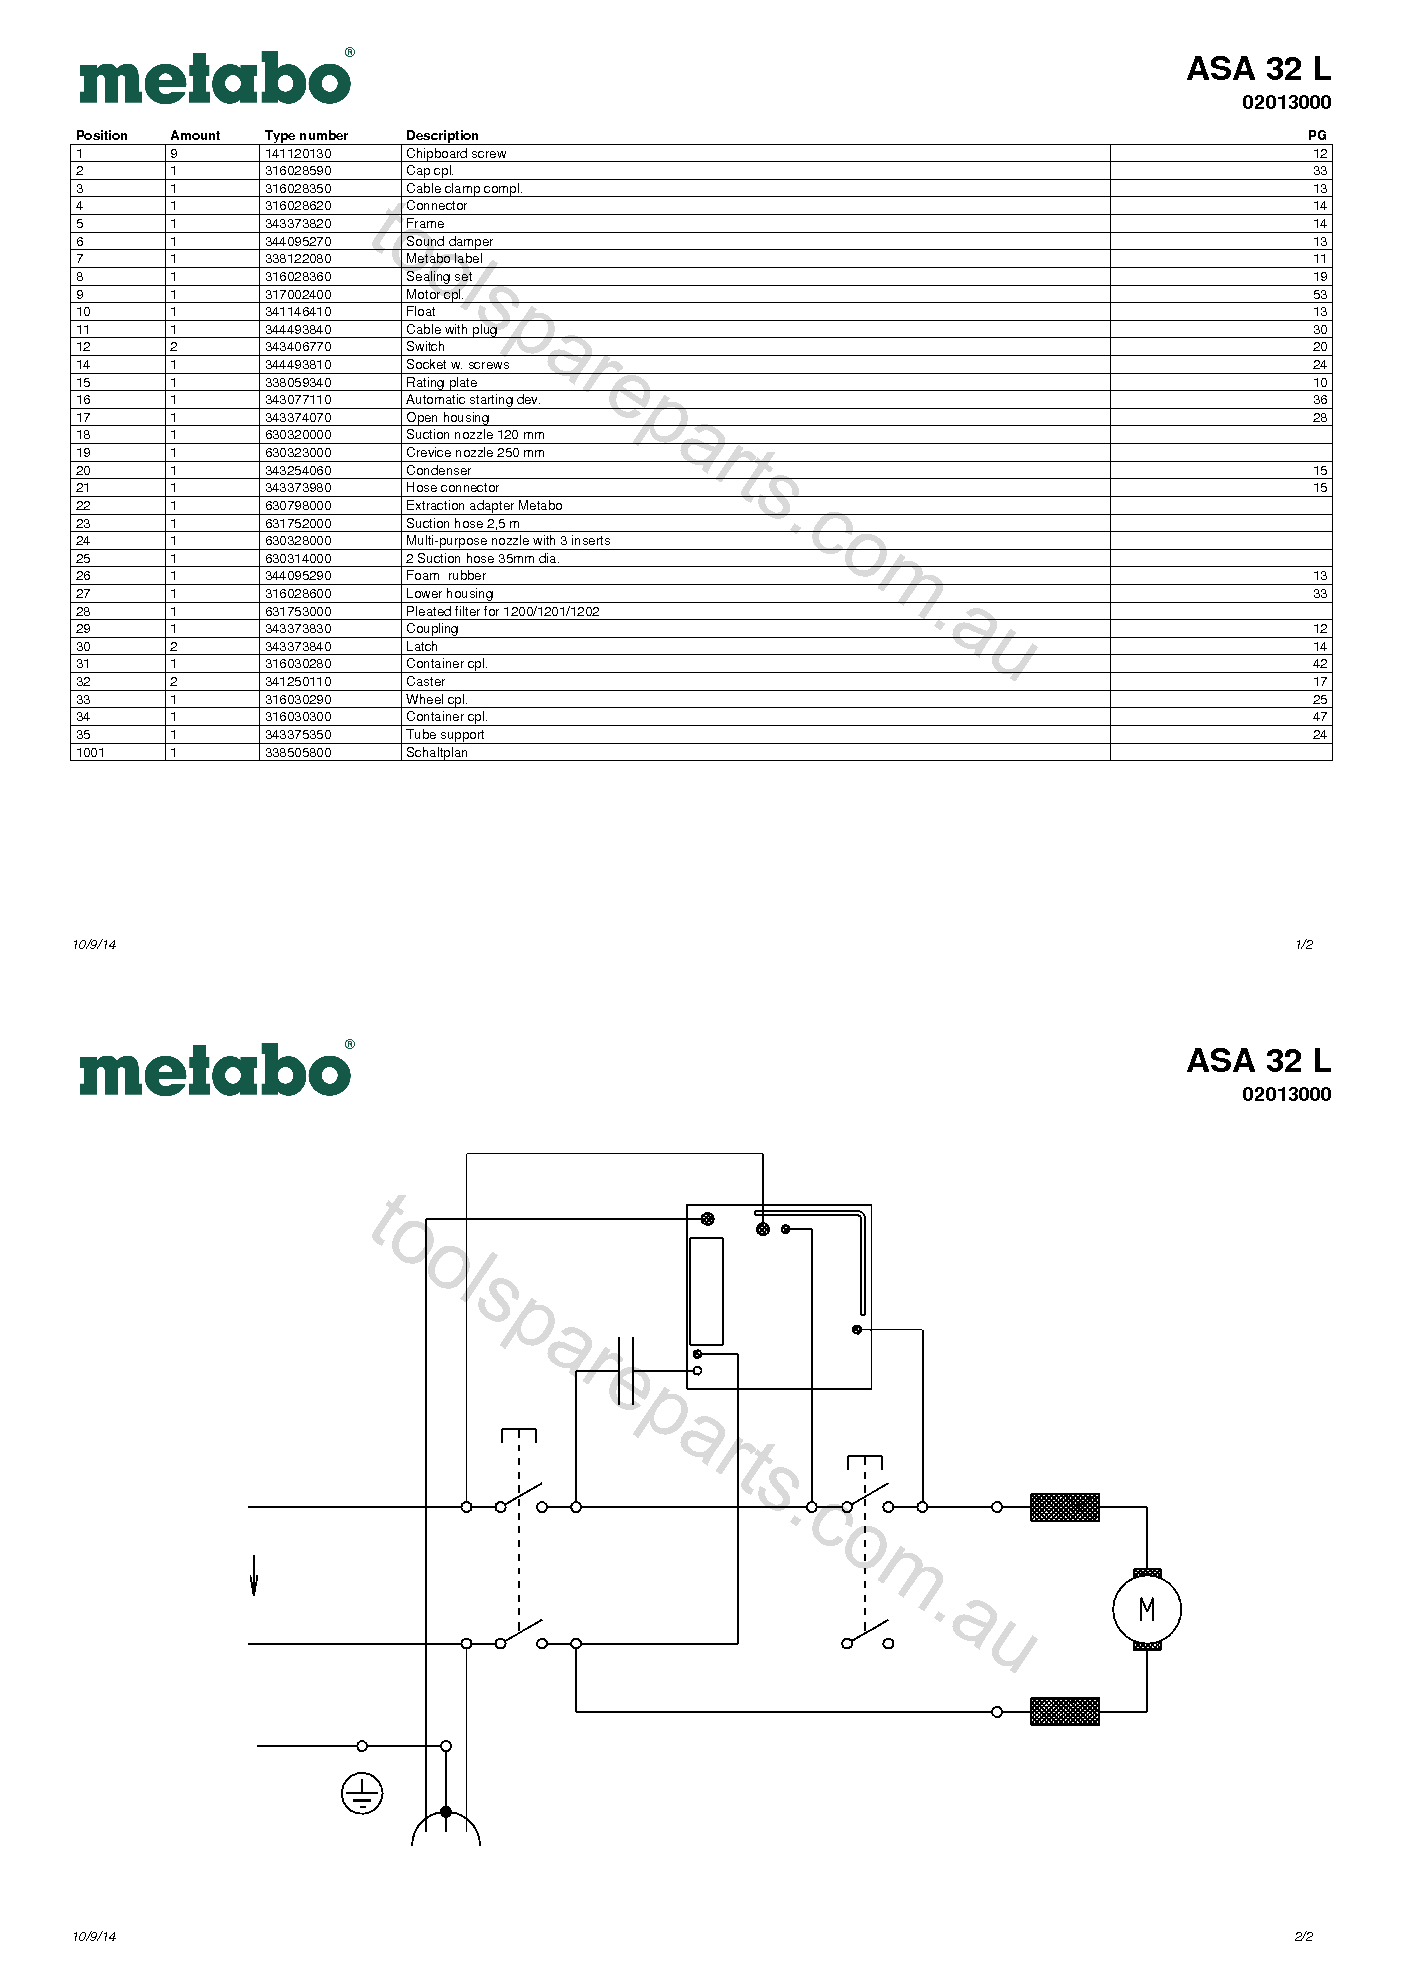 Metabo ASA 32 L 02013000  Diagram 1